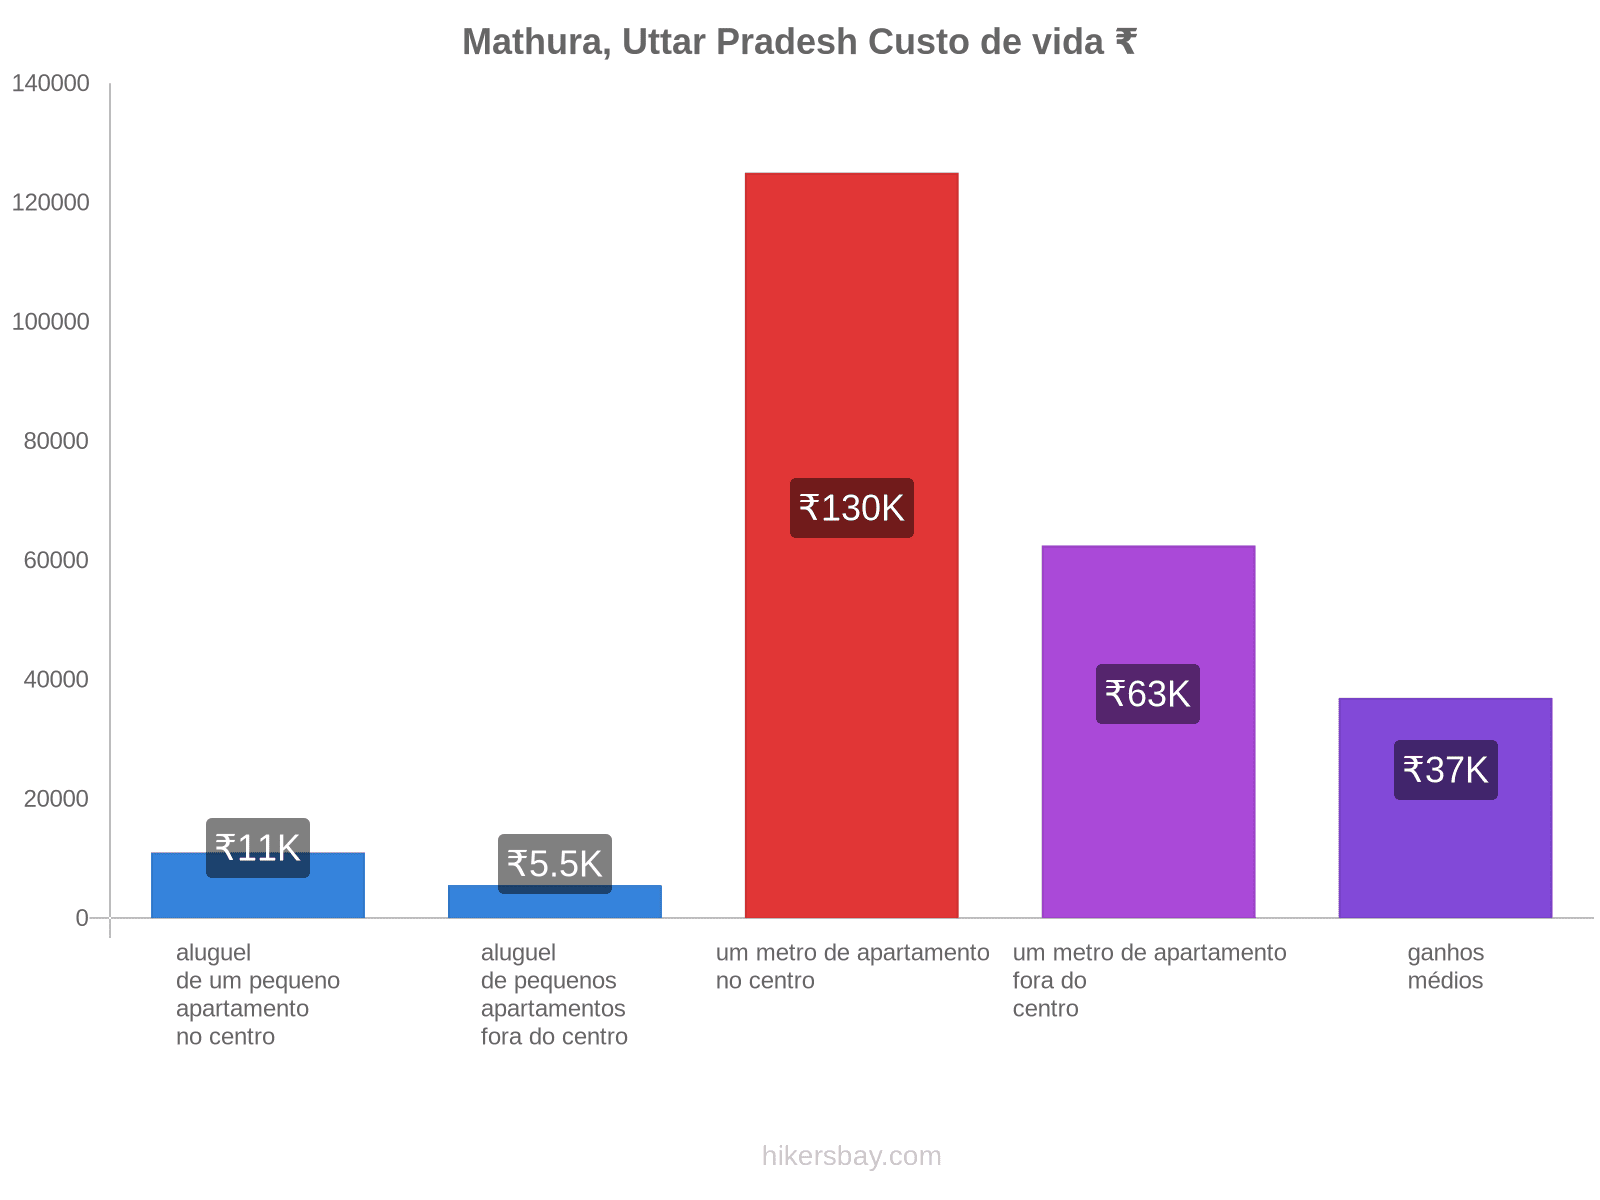 Mathura, Uttar Pradesh custo de vida hikersbay.com